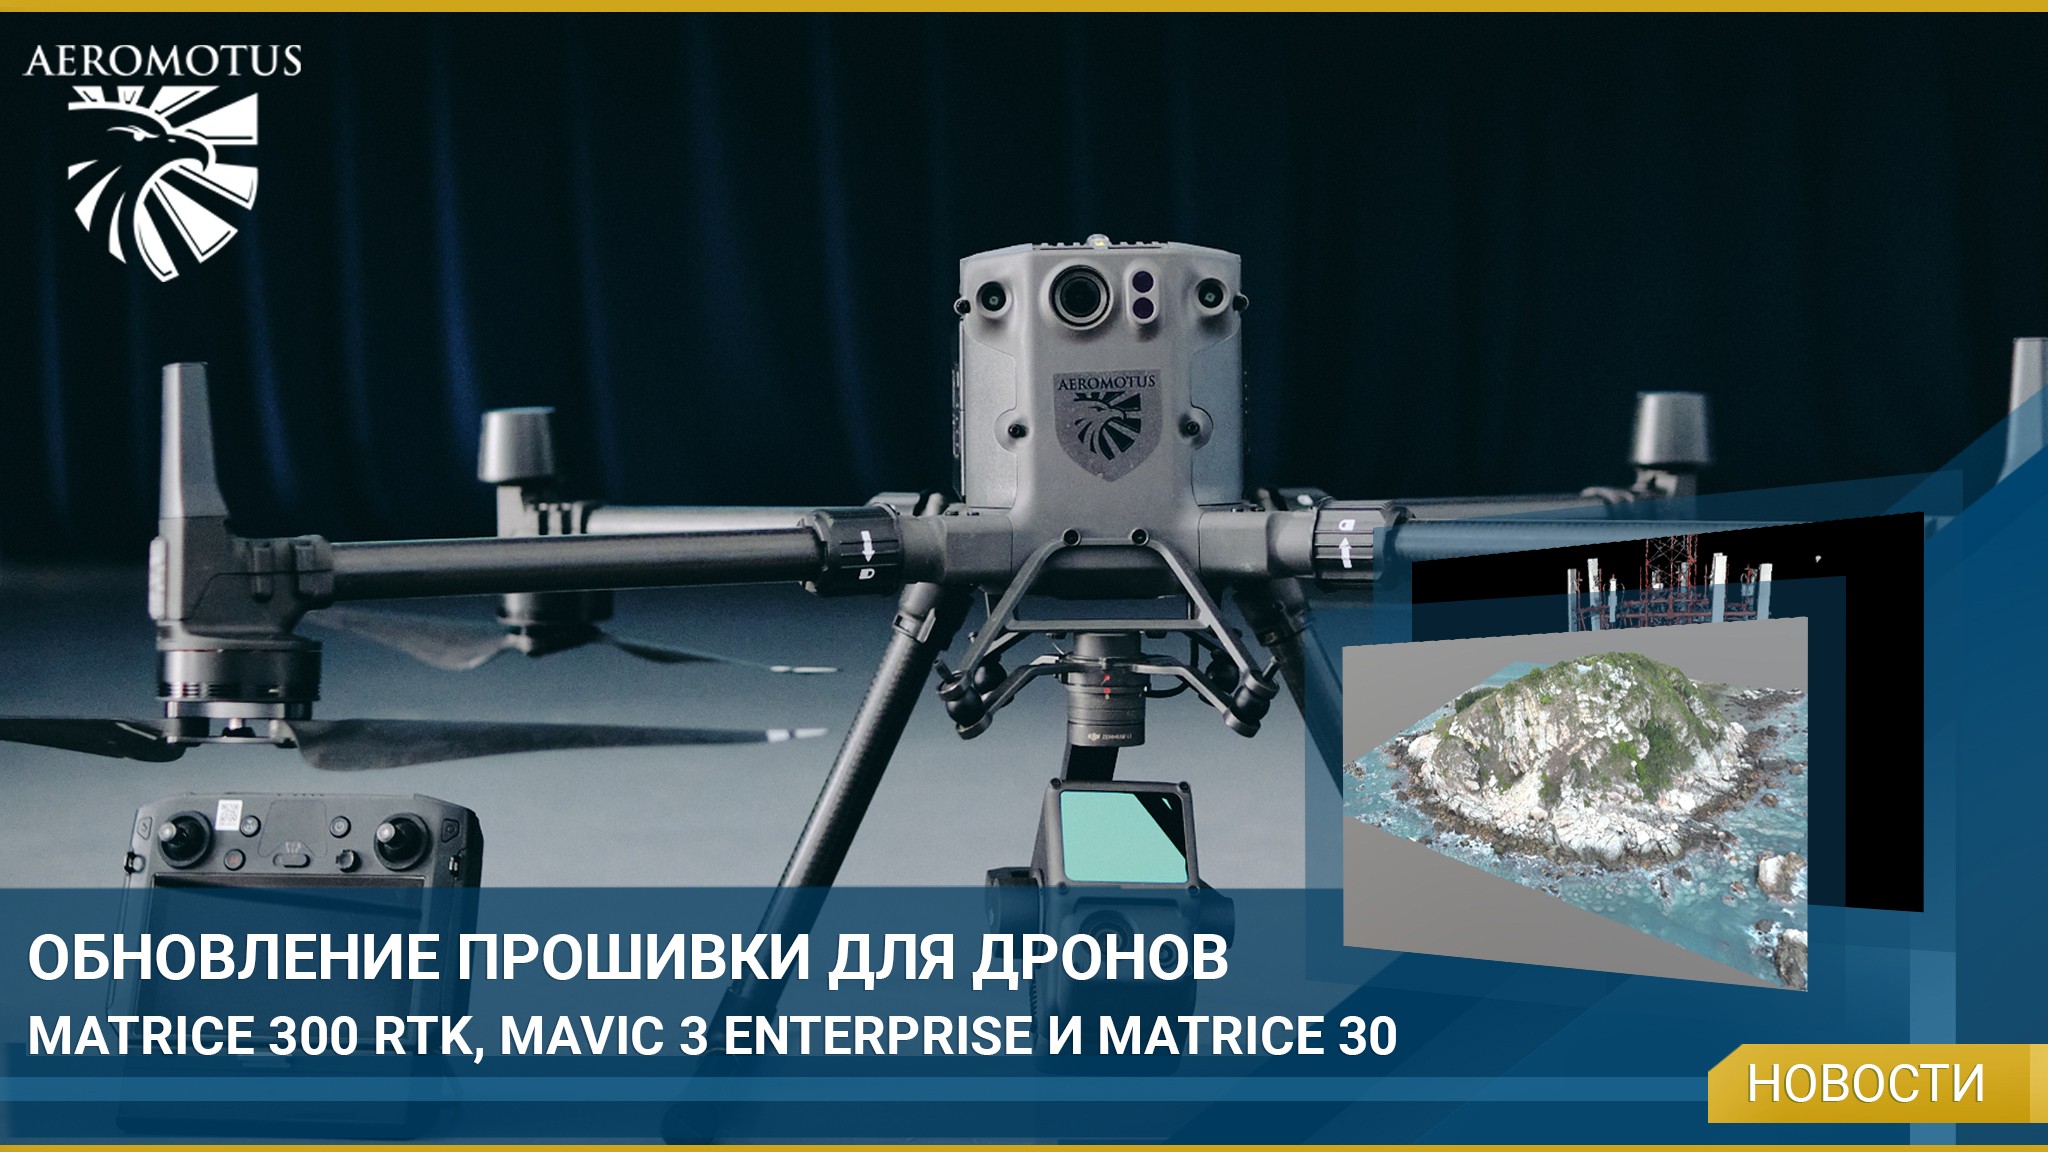 Вышло обновление прошивки для дронов Matrice 300 RTK, Mavic 3E и Matrice 30 -